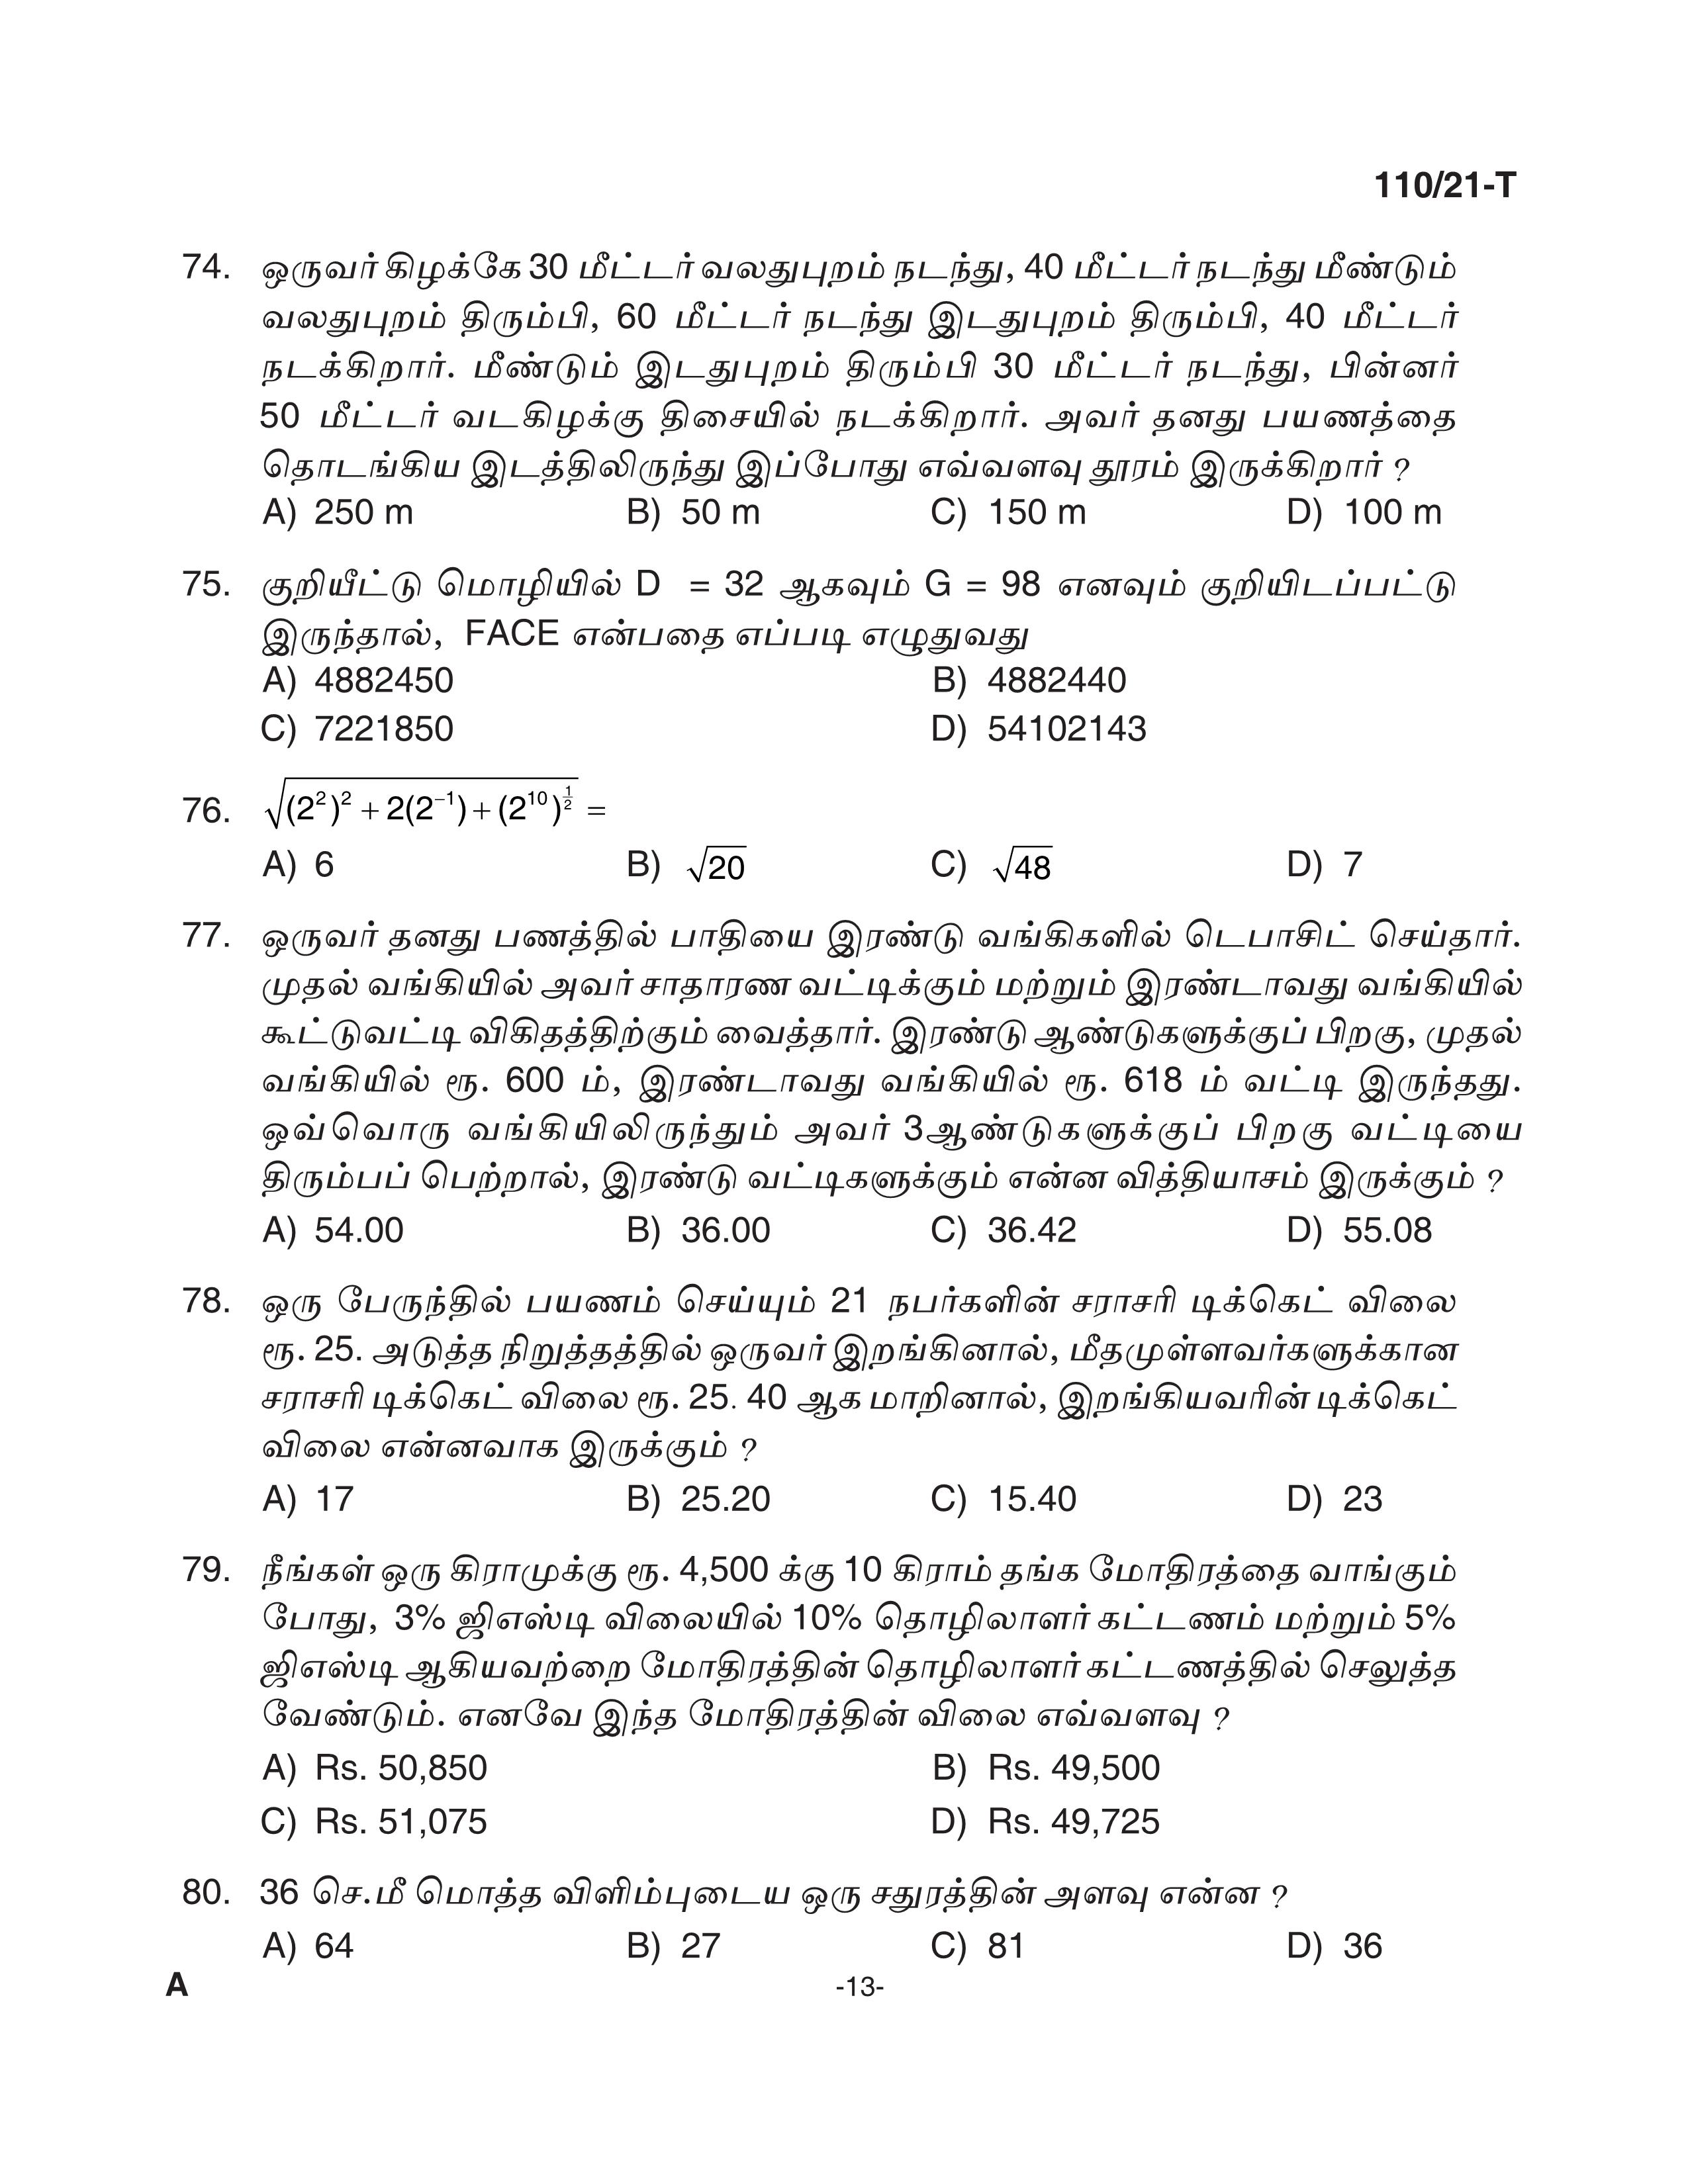 KPSC Assistant Grade II Sergeant Tamil Exam 2021 Code 1102021 T 12